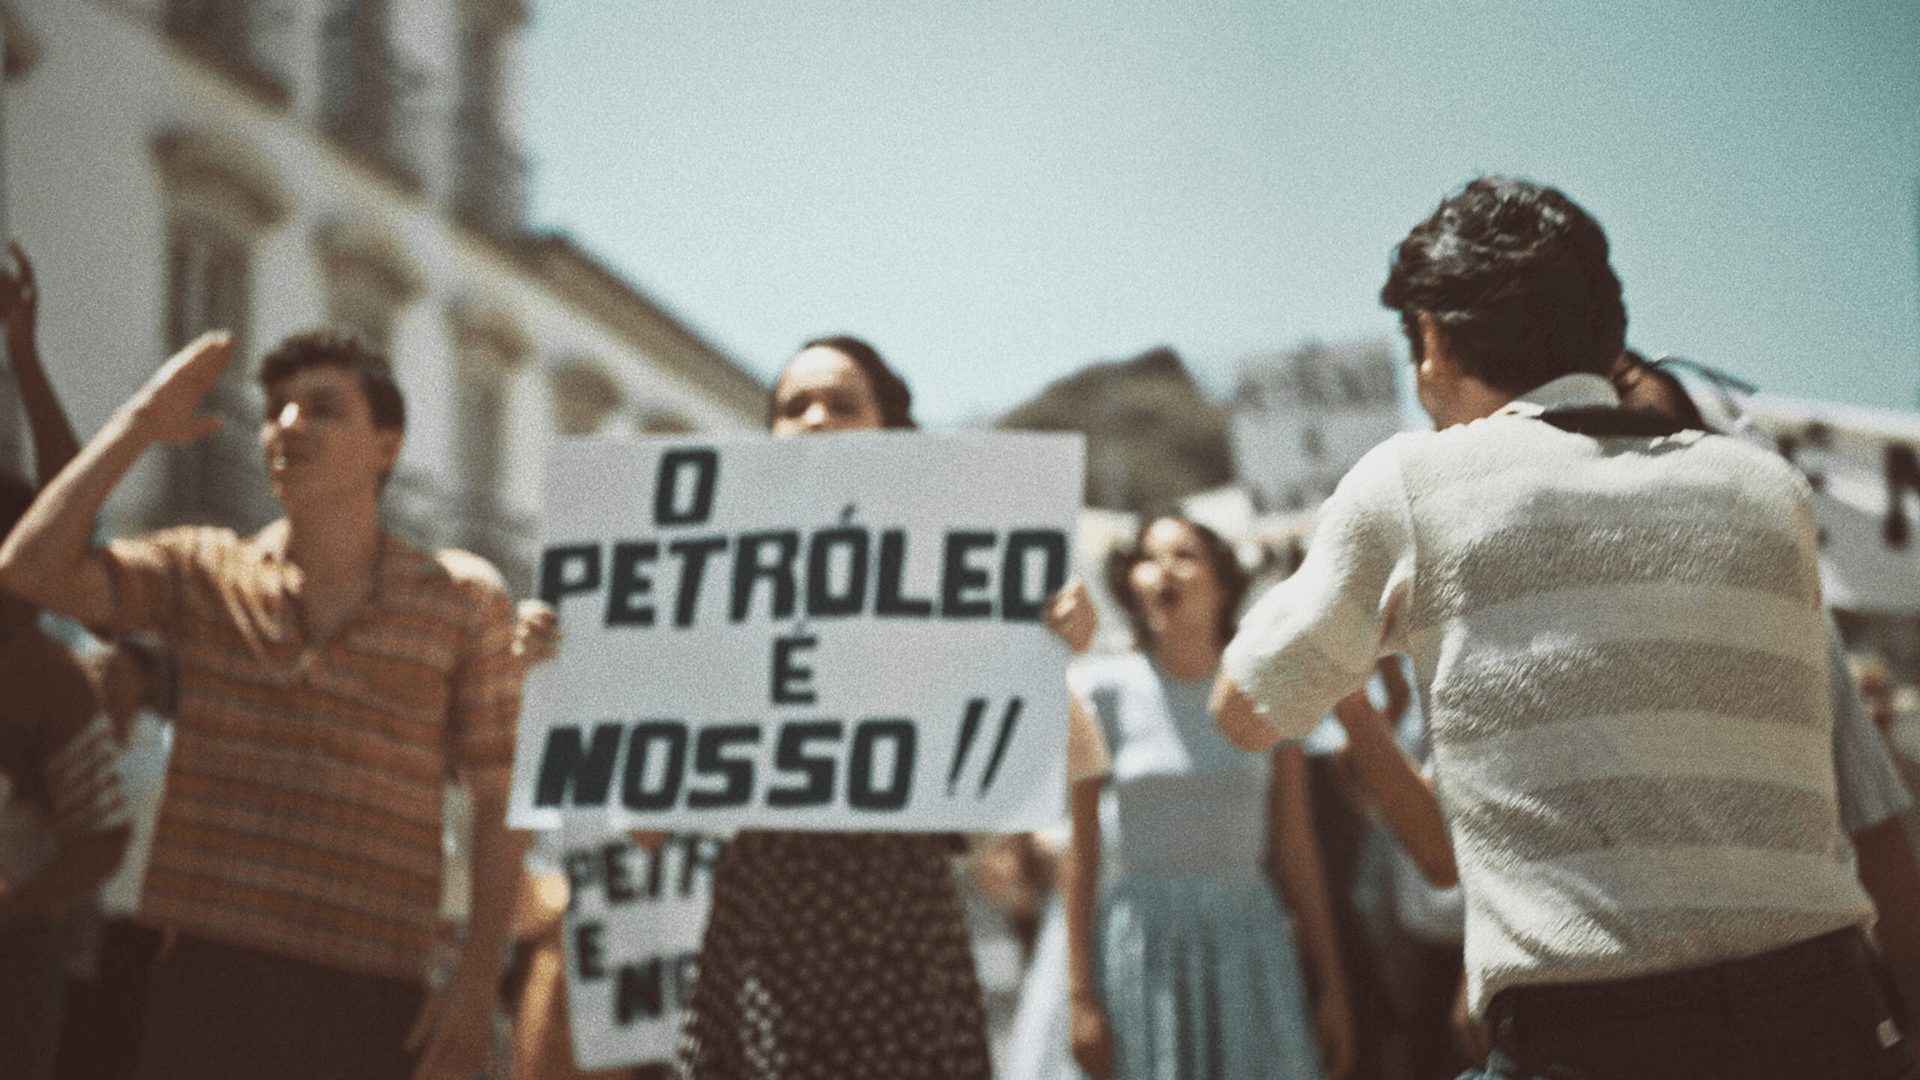 Petrobras completa 70 anos com campanha inspiradora e foco na transição energética